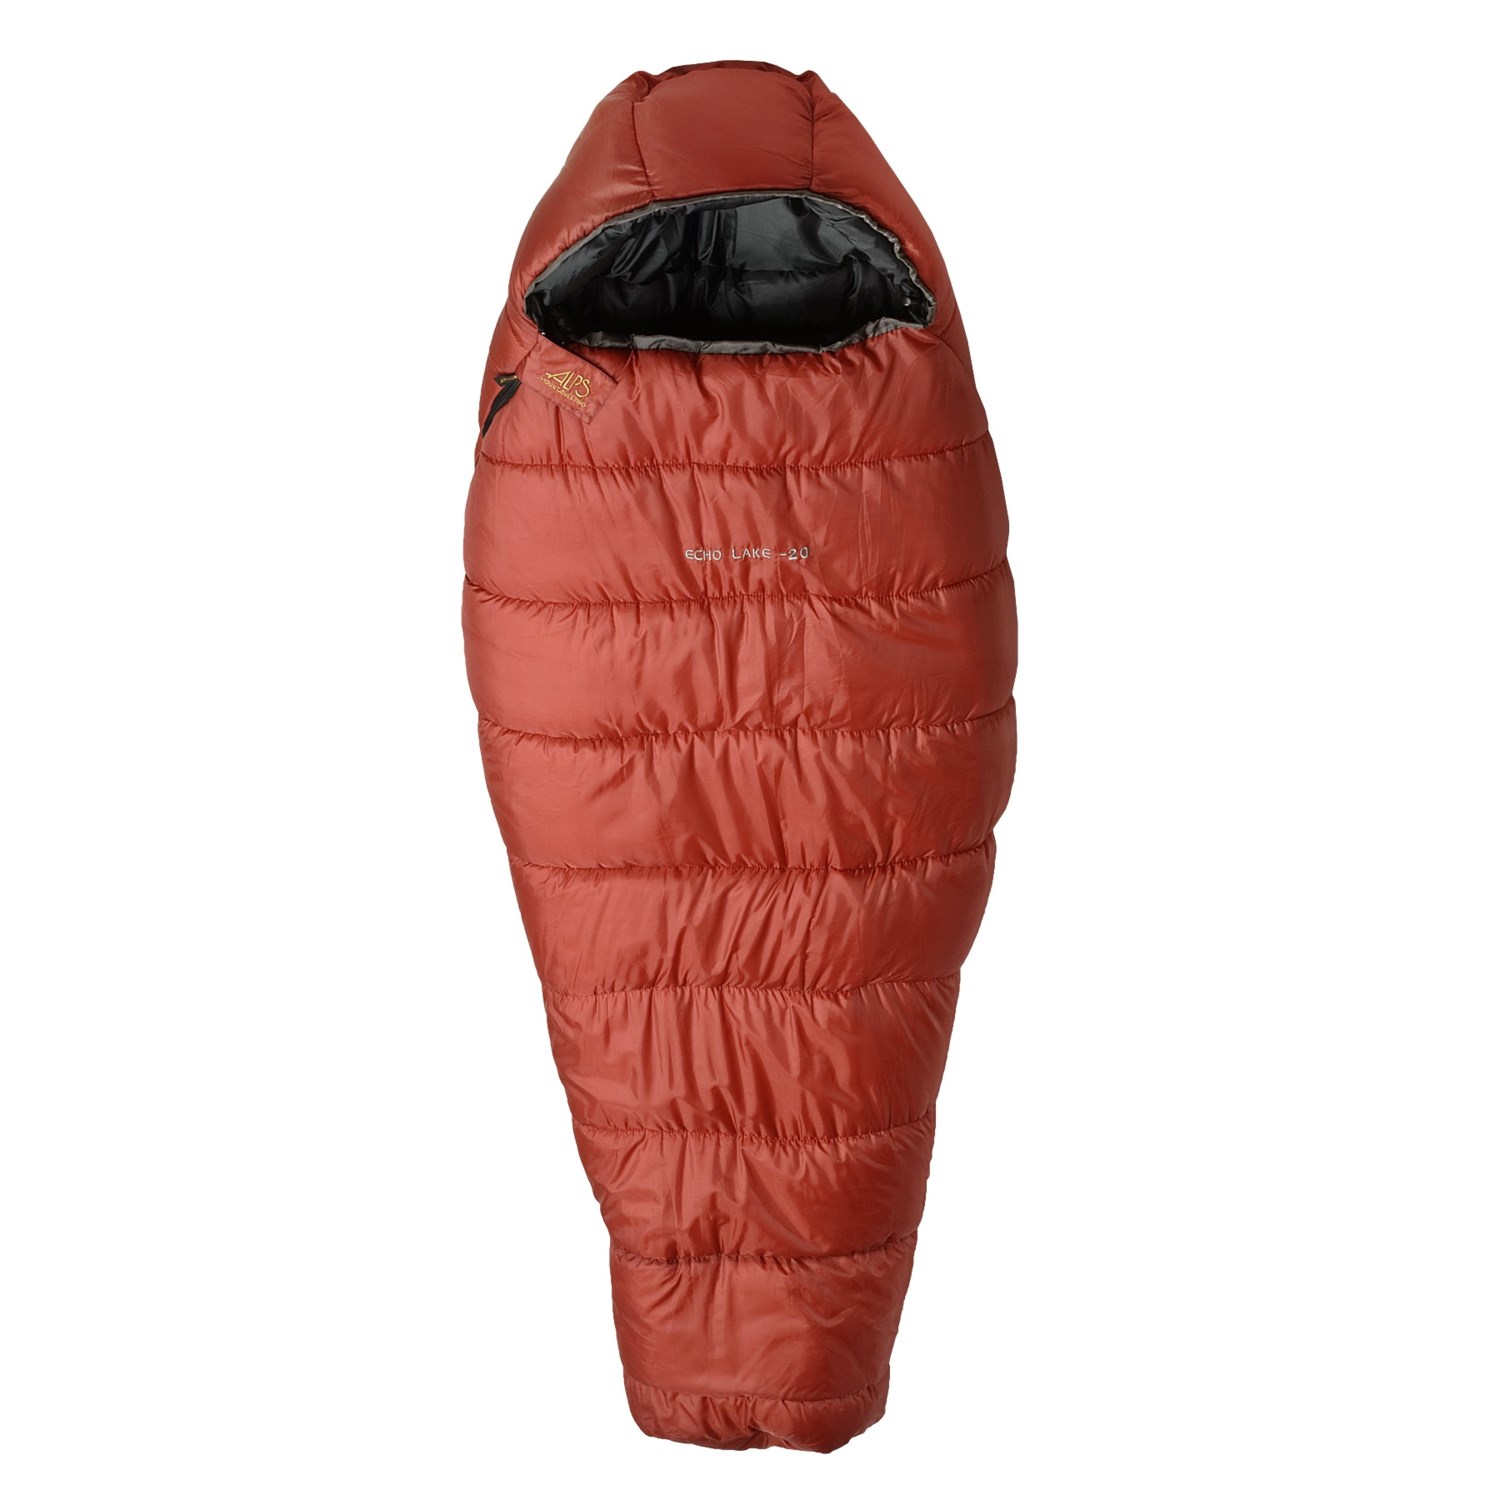 ALPS Mountaineering -20°F Echo Lake Sleeping Bag - Synthetic, Mummy ...